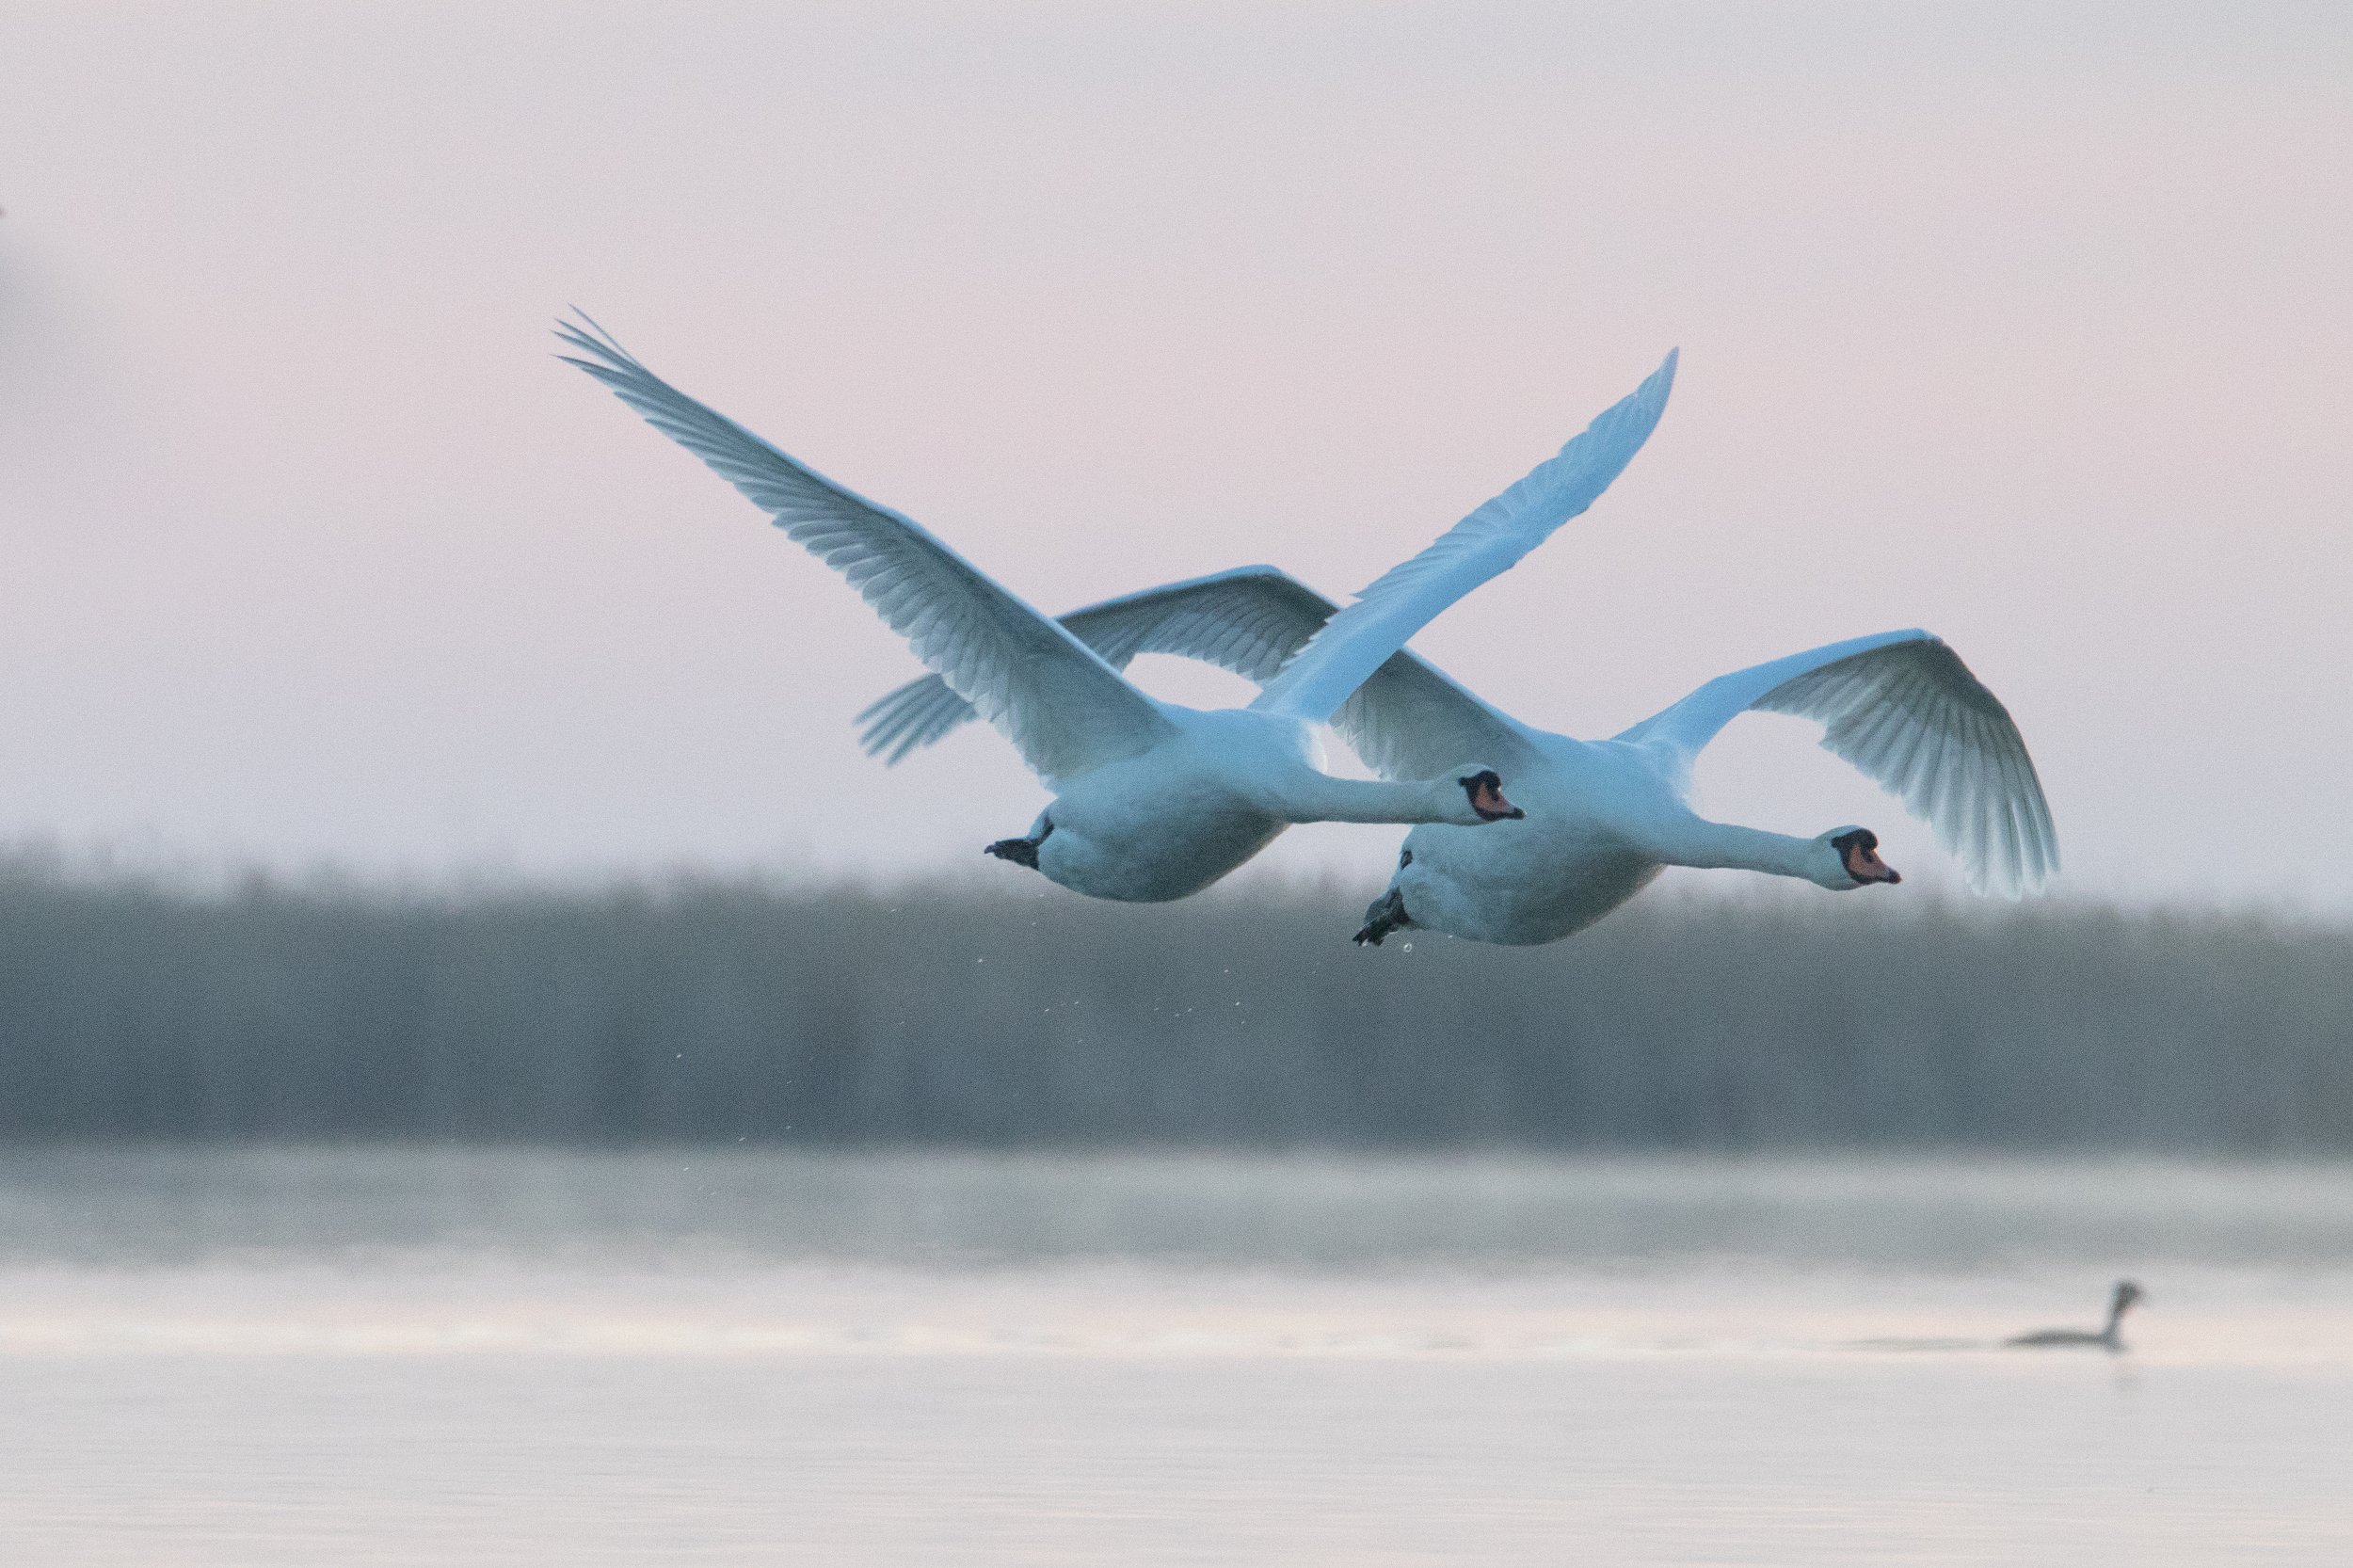 100 000 изображений по запросу Лебеди доступны в рамках роялти-фри лицензии